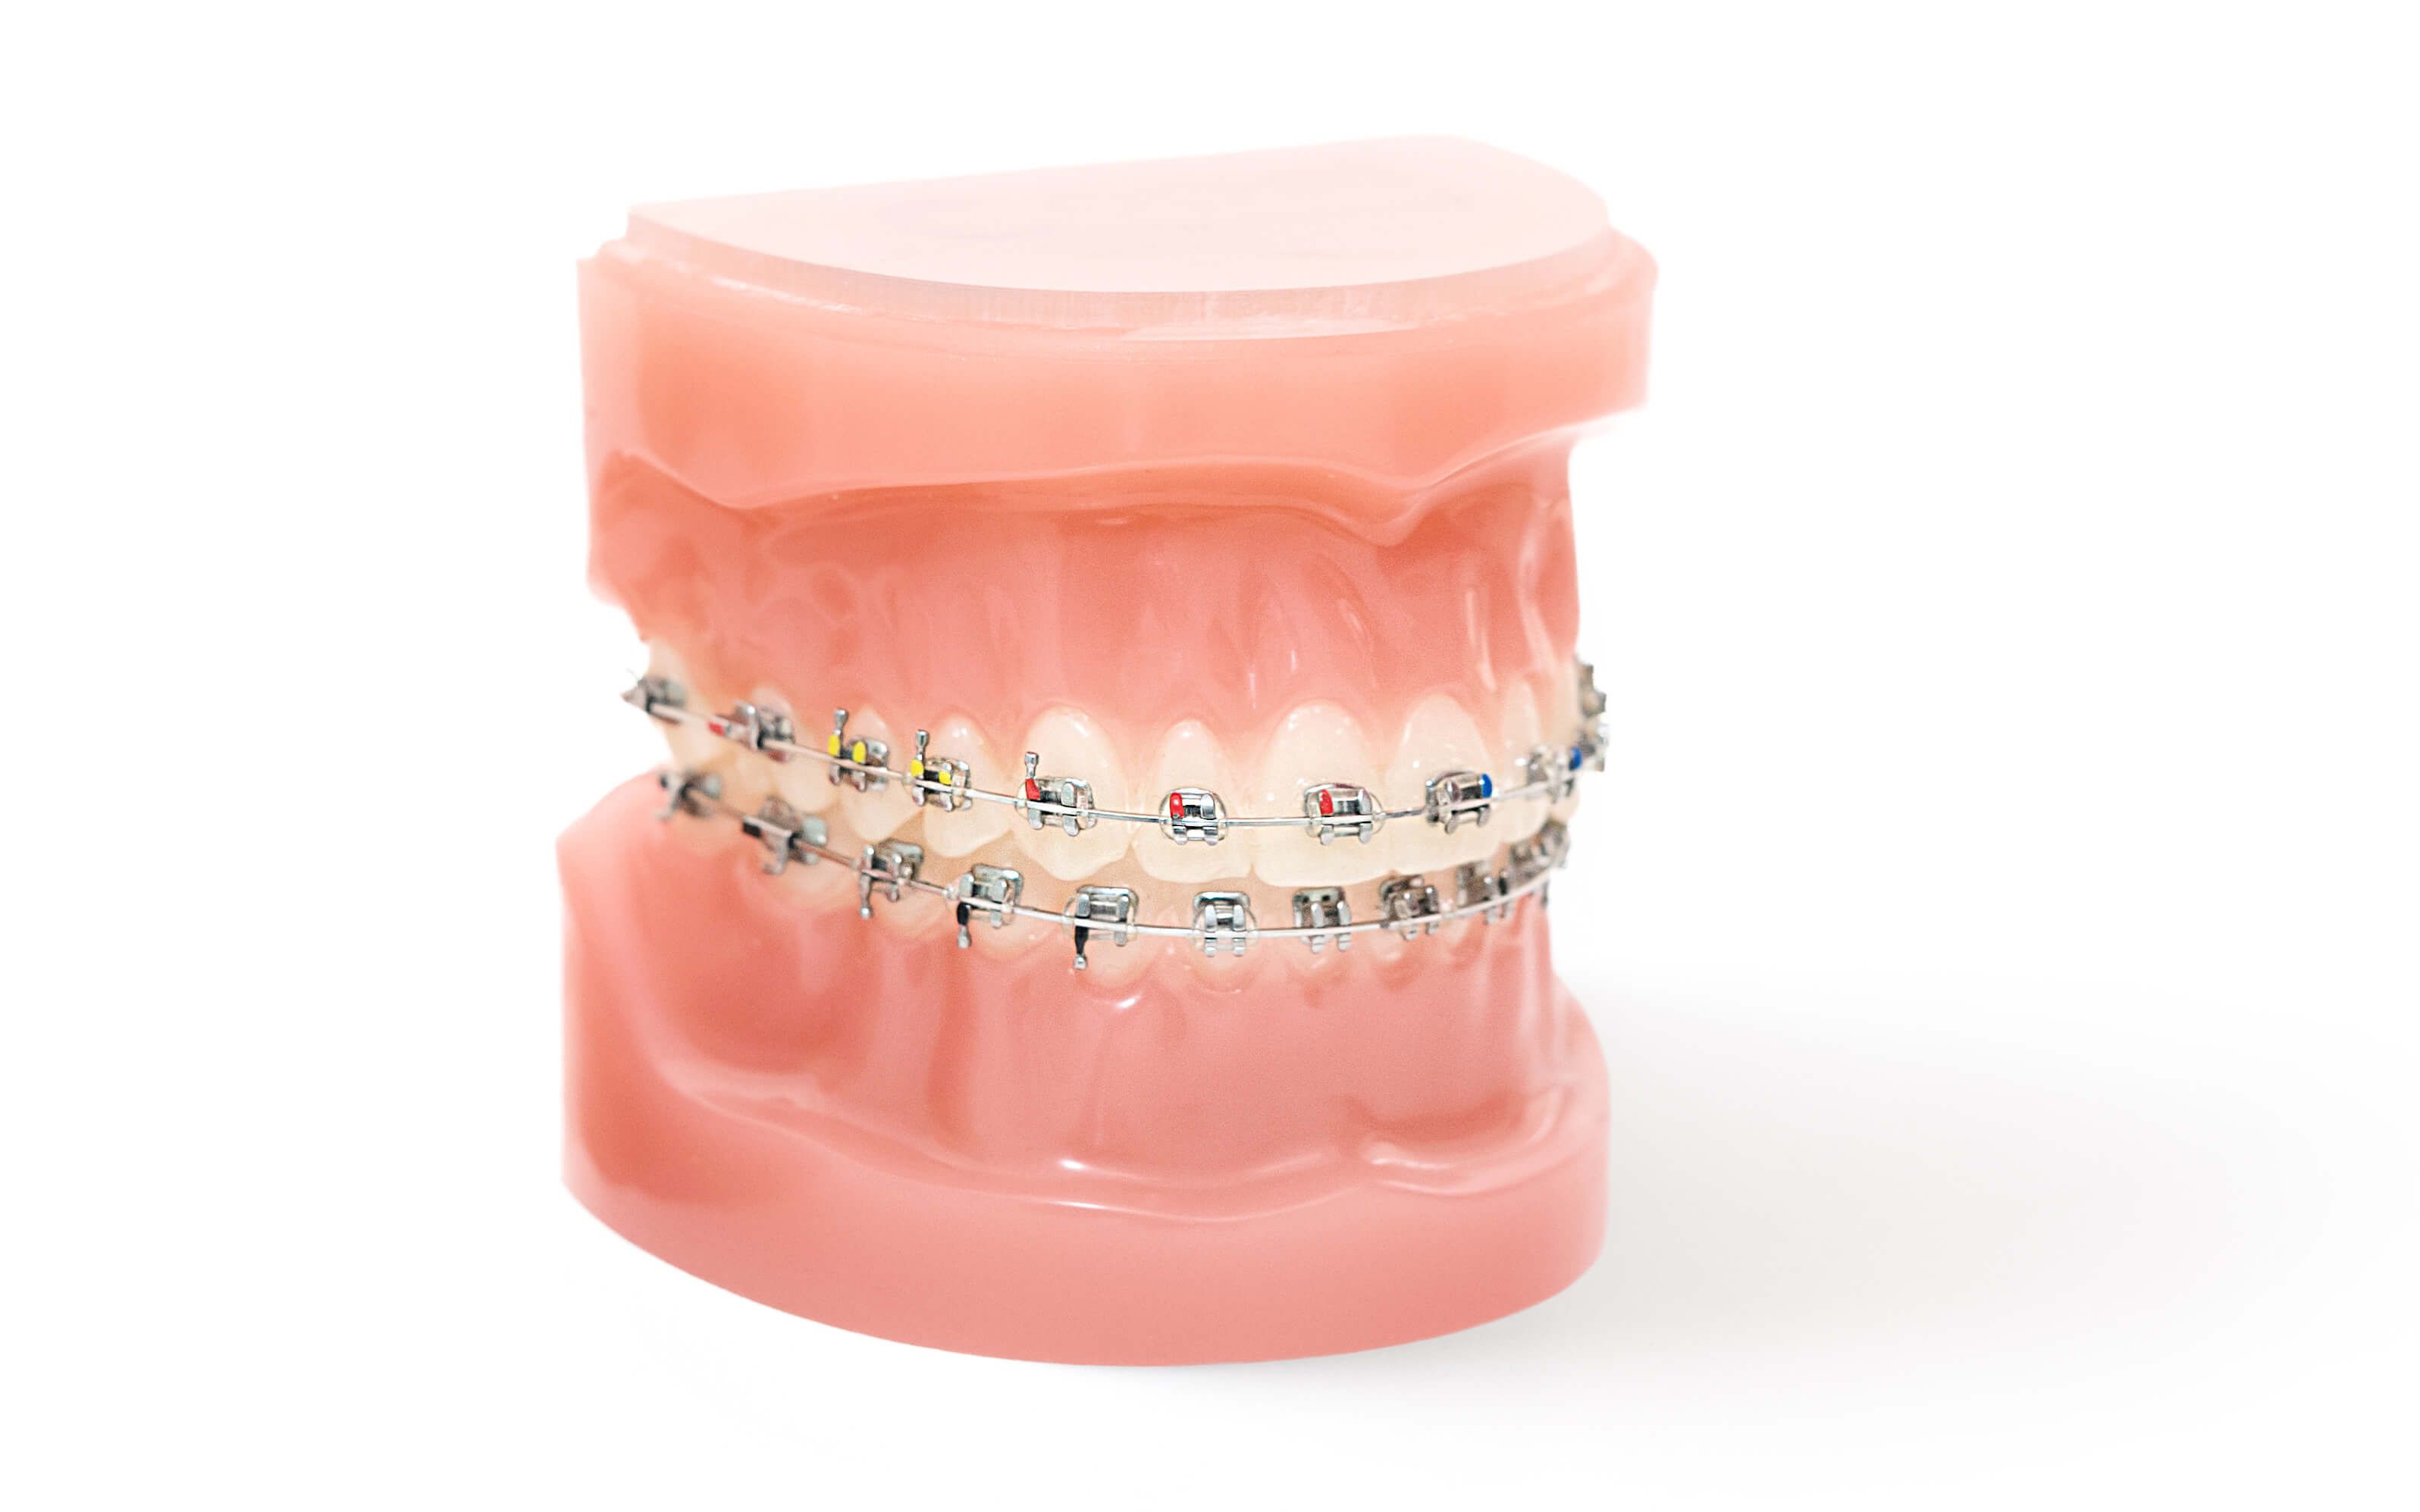 Beim Kieferorthopäden dient die Multiband- oder Multibracket-Technik bei der Teile der Behandlungsapparatur fest mit den Zähnen verbunden werden